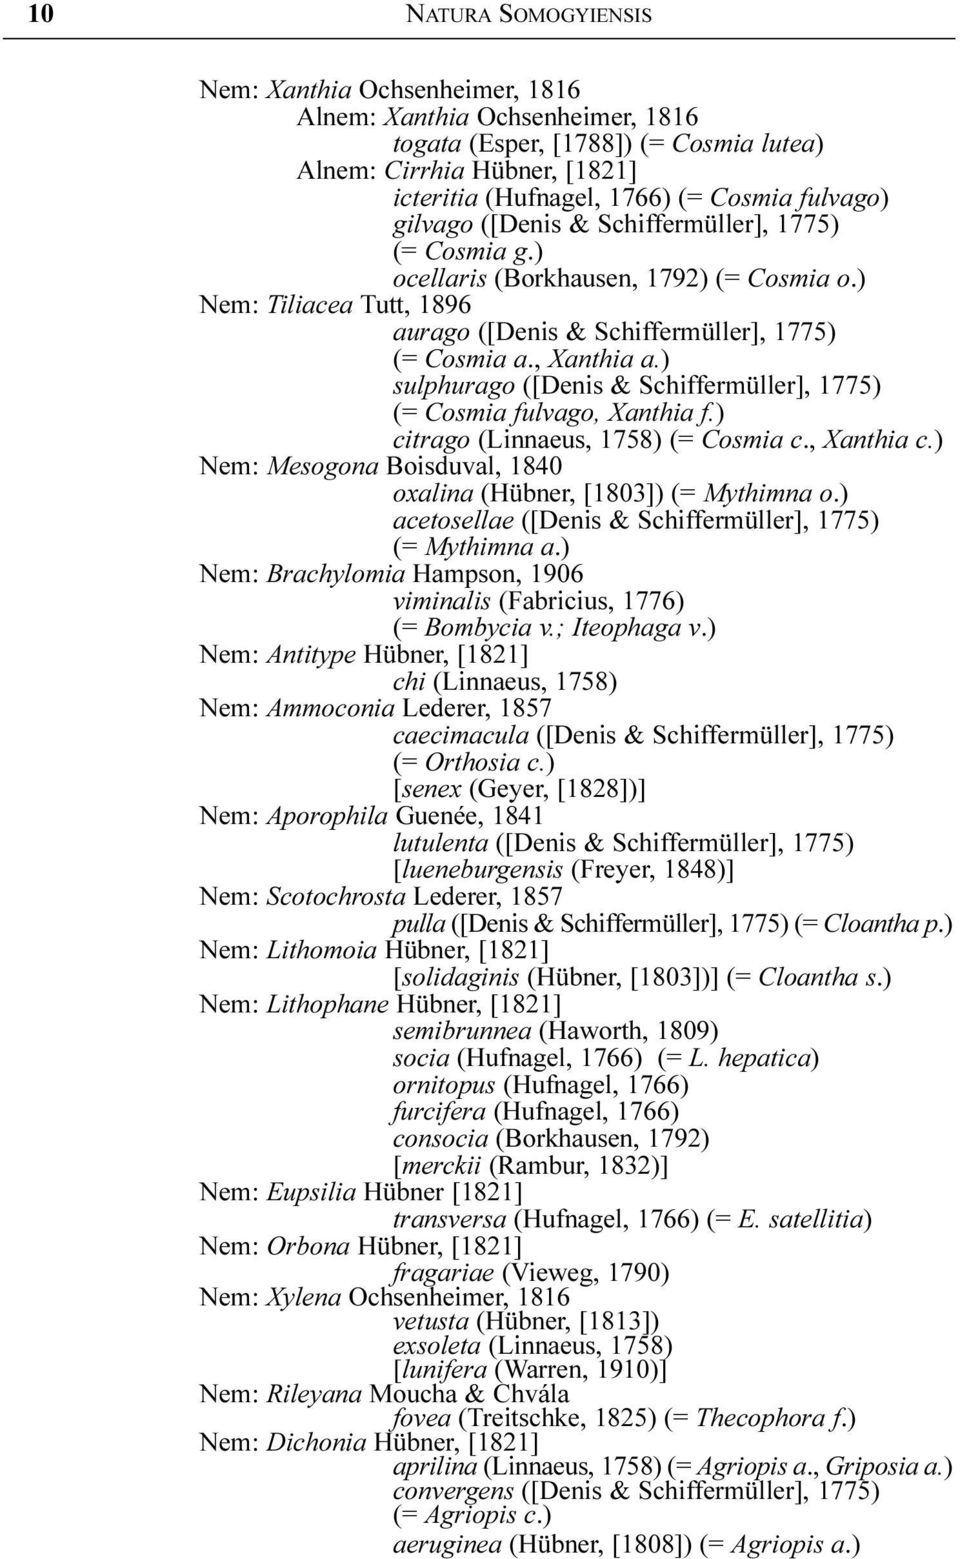 ) sulphurago ([Denis & Schiffermüller], 1775) (= Cosmia fulvago, Xanthia f.) citrago (Linnaeus, 1758) (= Cosmia c., Xanthia c.) Nem: Mesogona Boisduval, 1840 oxalina (Hübner, [1803]) (= Mythimna o.